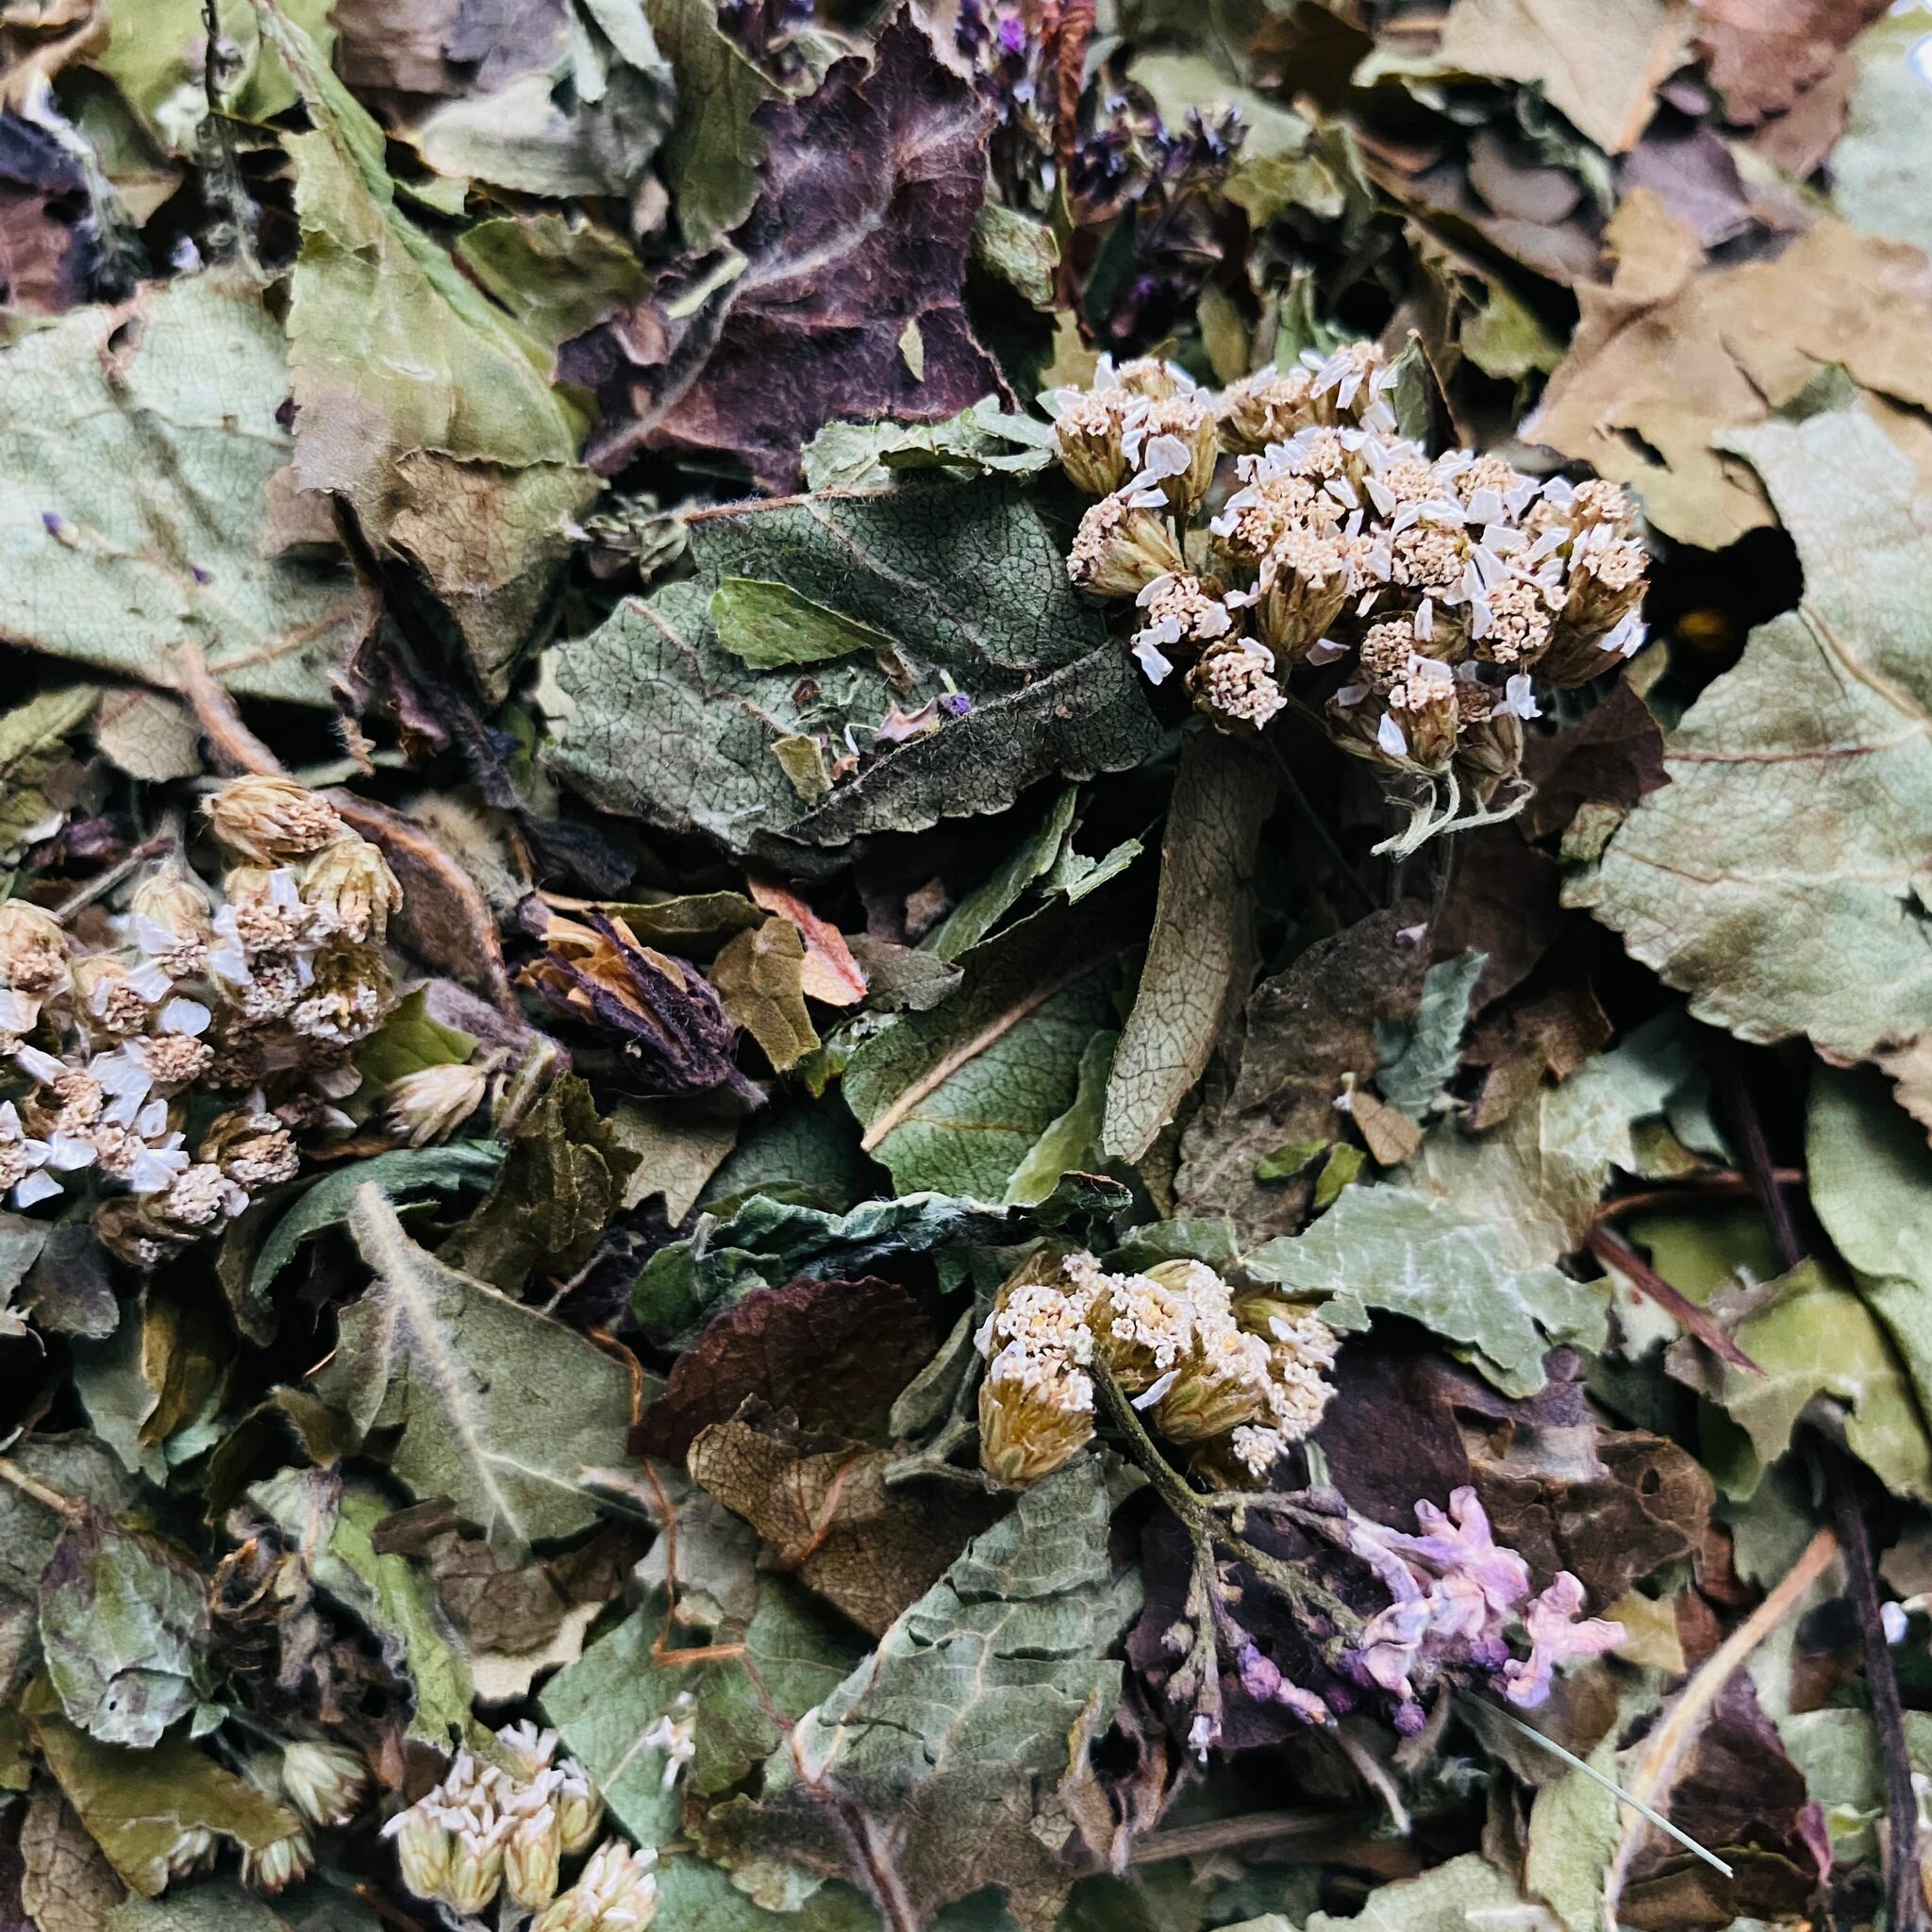 Травяной, зеленый чай тысячилистником, листья яблони и вишни 60 гр г Magic village, фиточай, травяной сбор